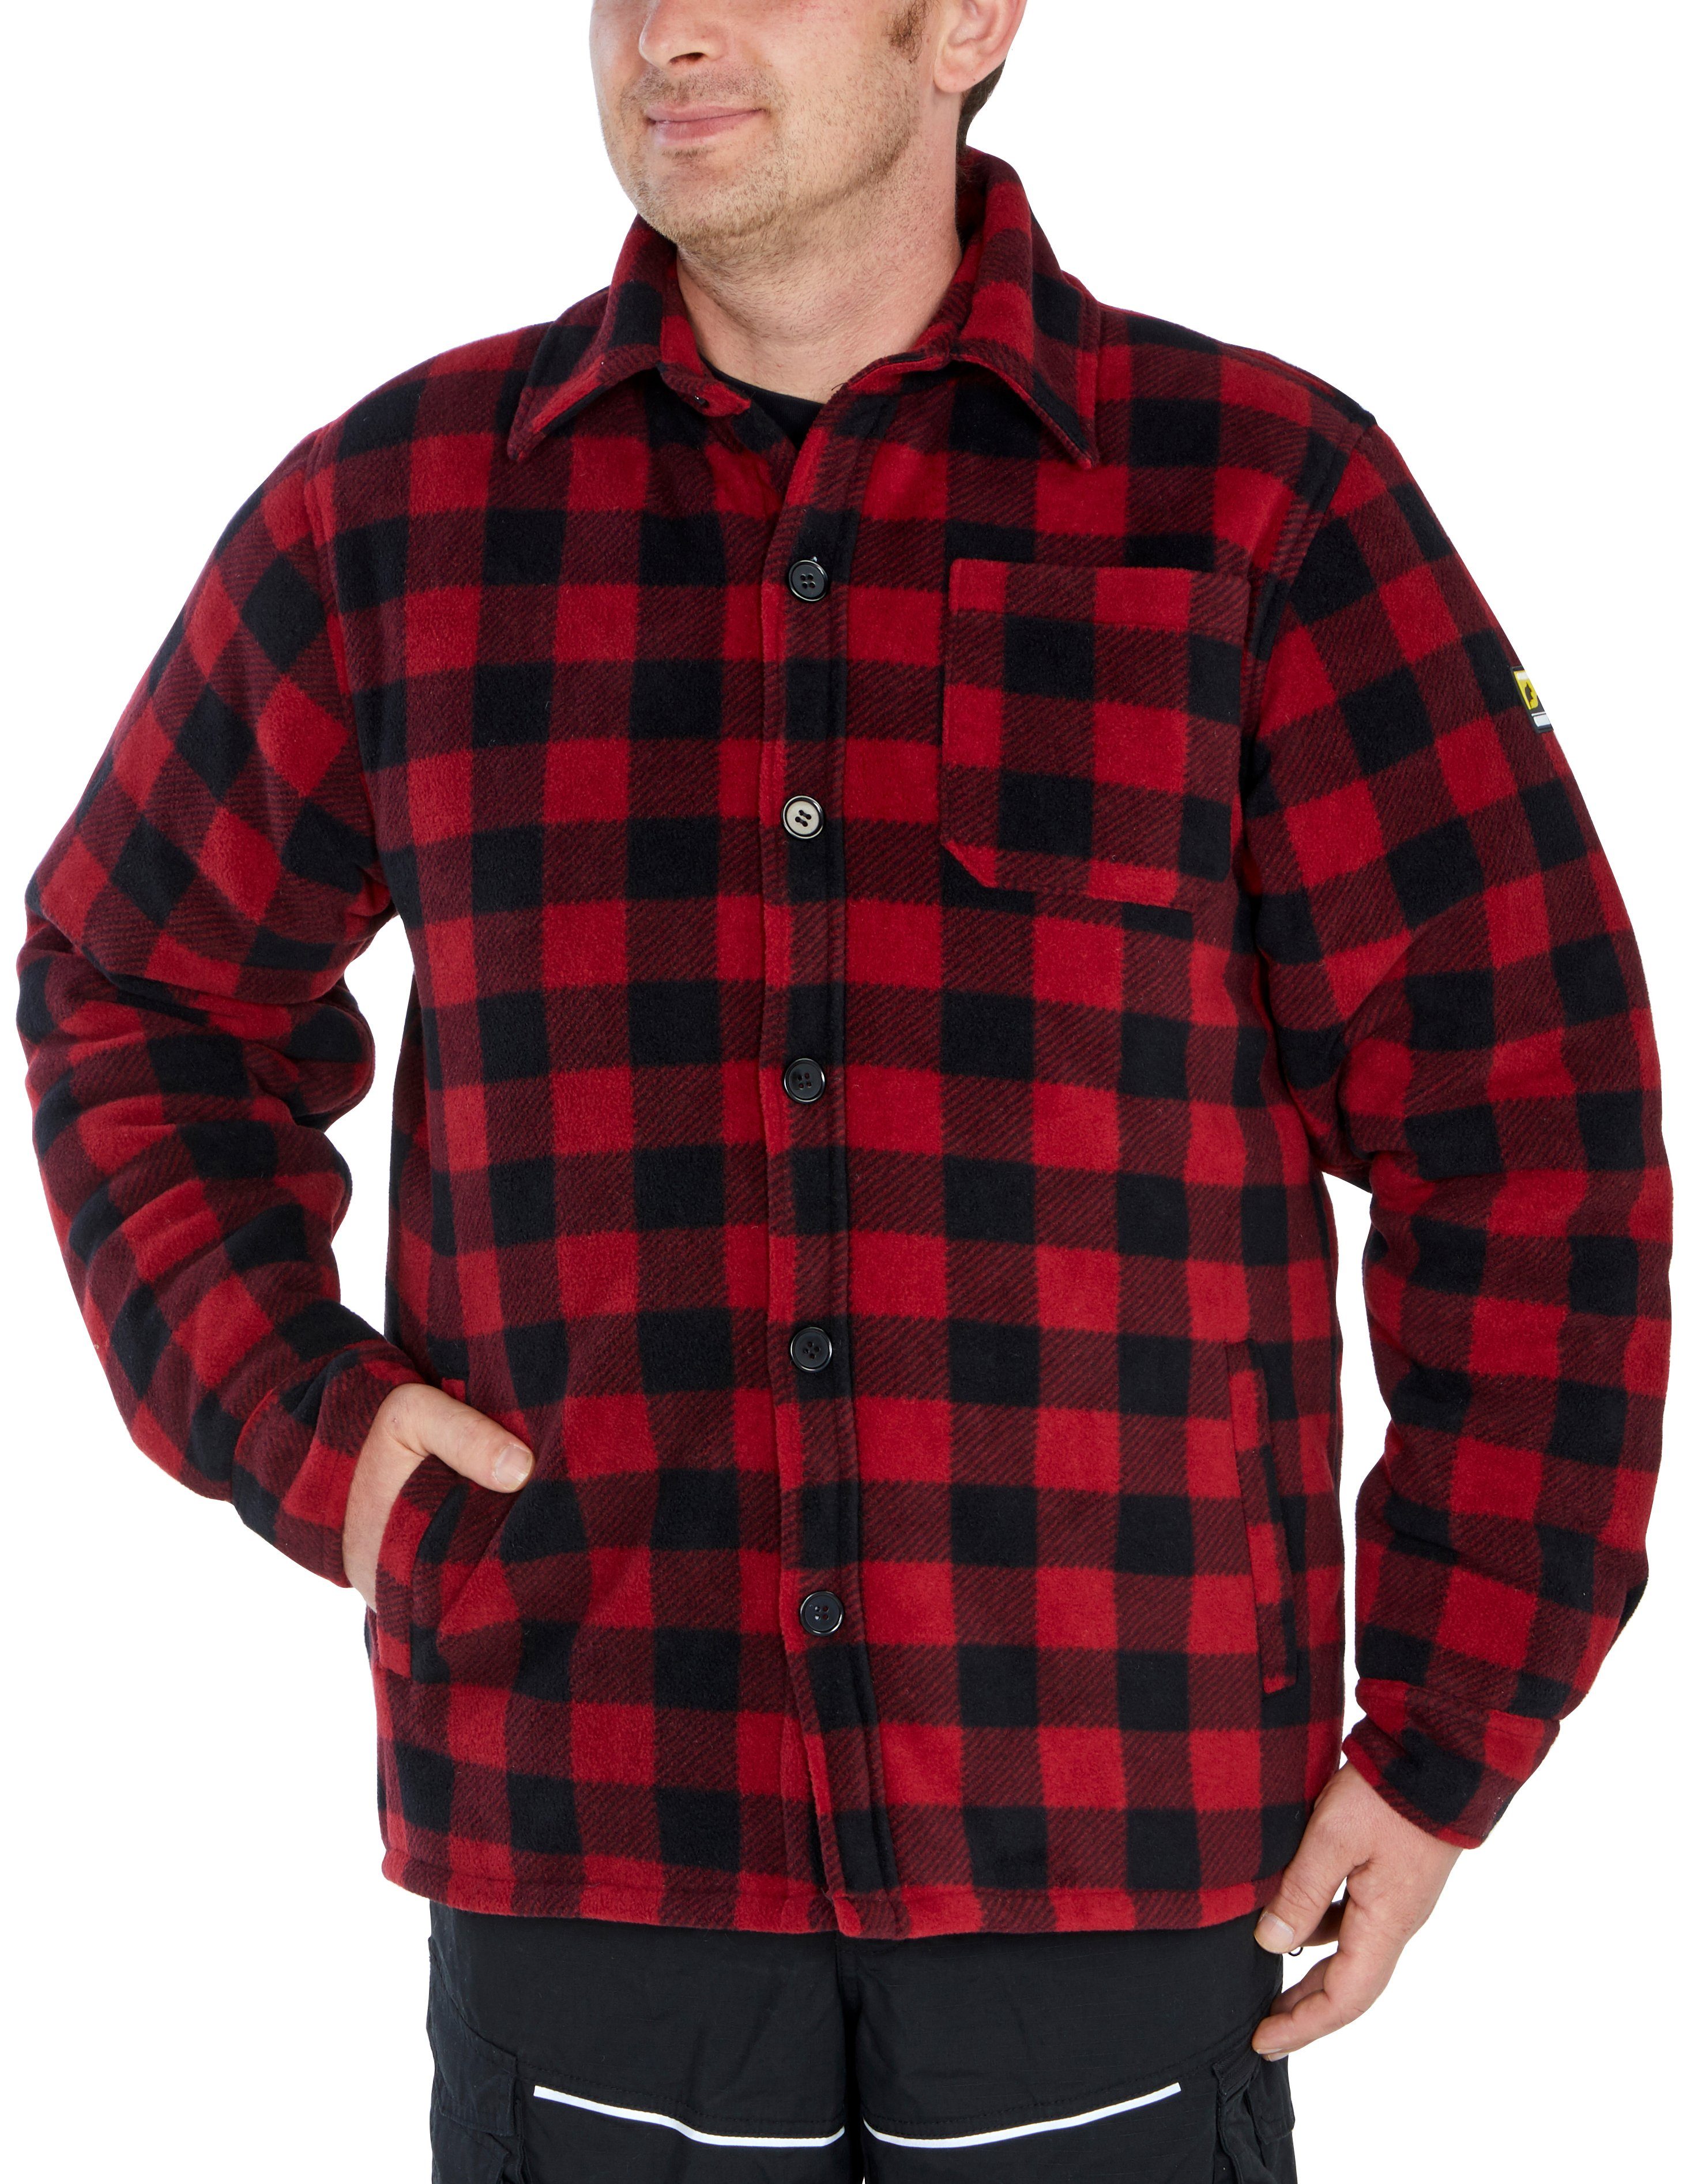 Northern Country Flanellhemd (als Jacke mit Rücken, warm offen tragen) verlängertem oder Flanellstoff zugeknöpft 5 rot-schwarz gefüttert, zu Taschen, Hemd mit